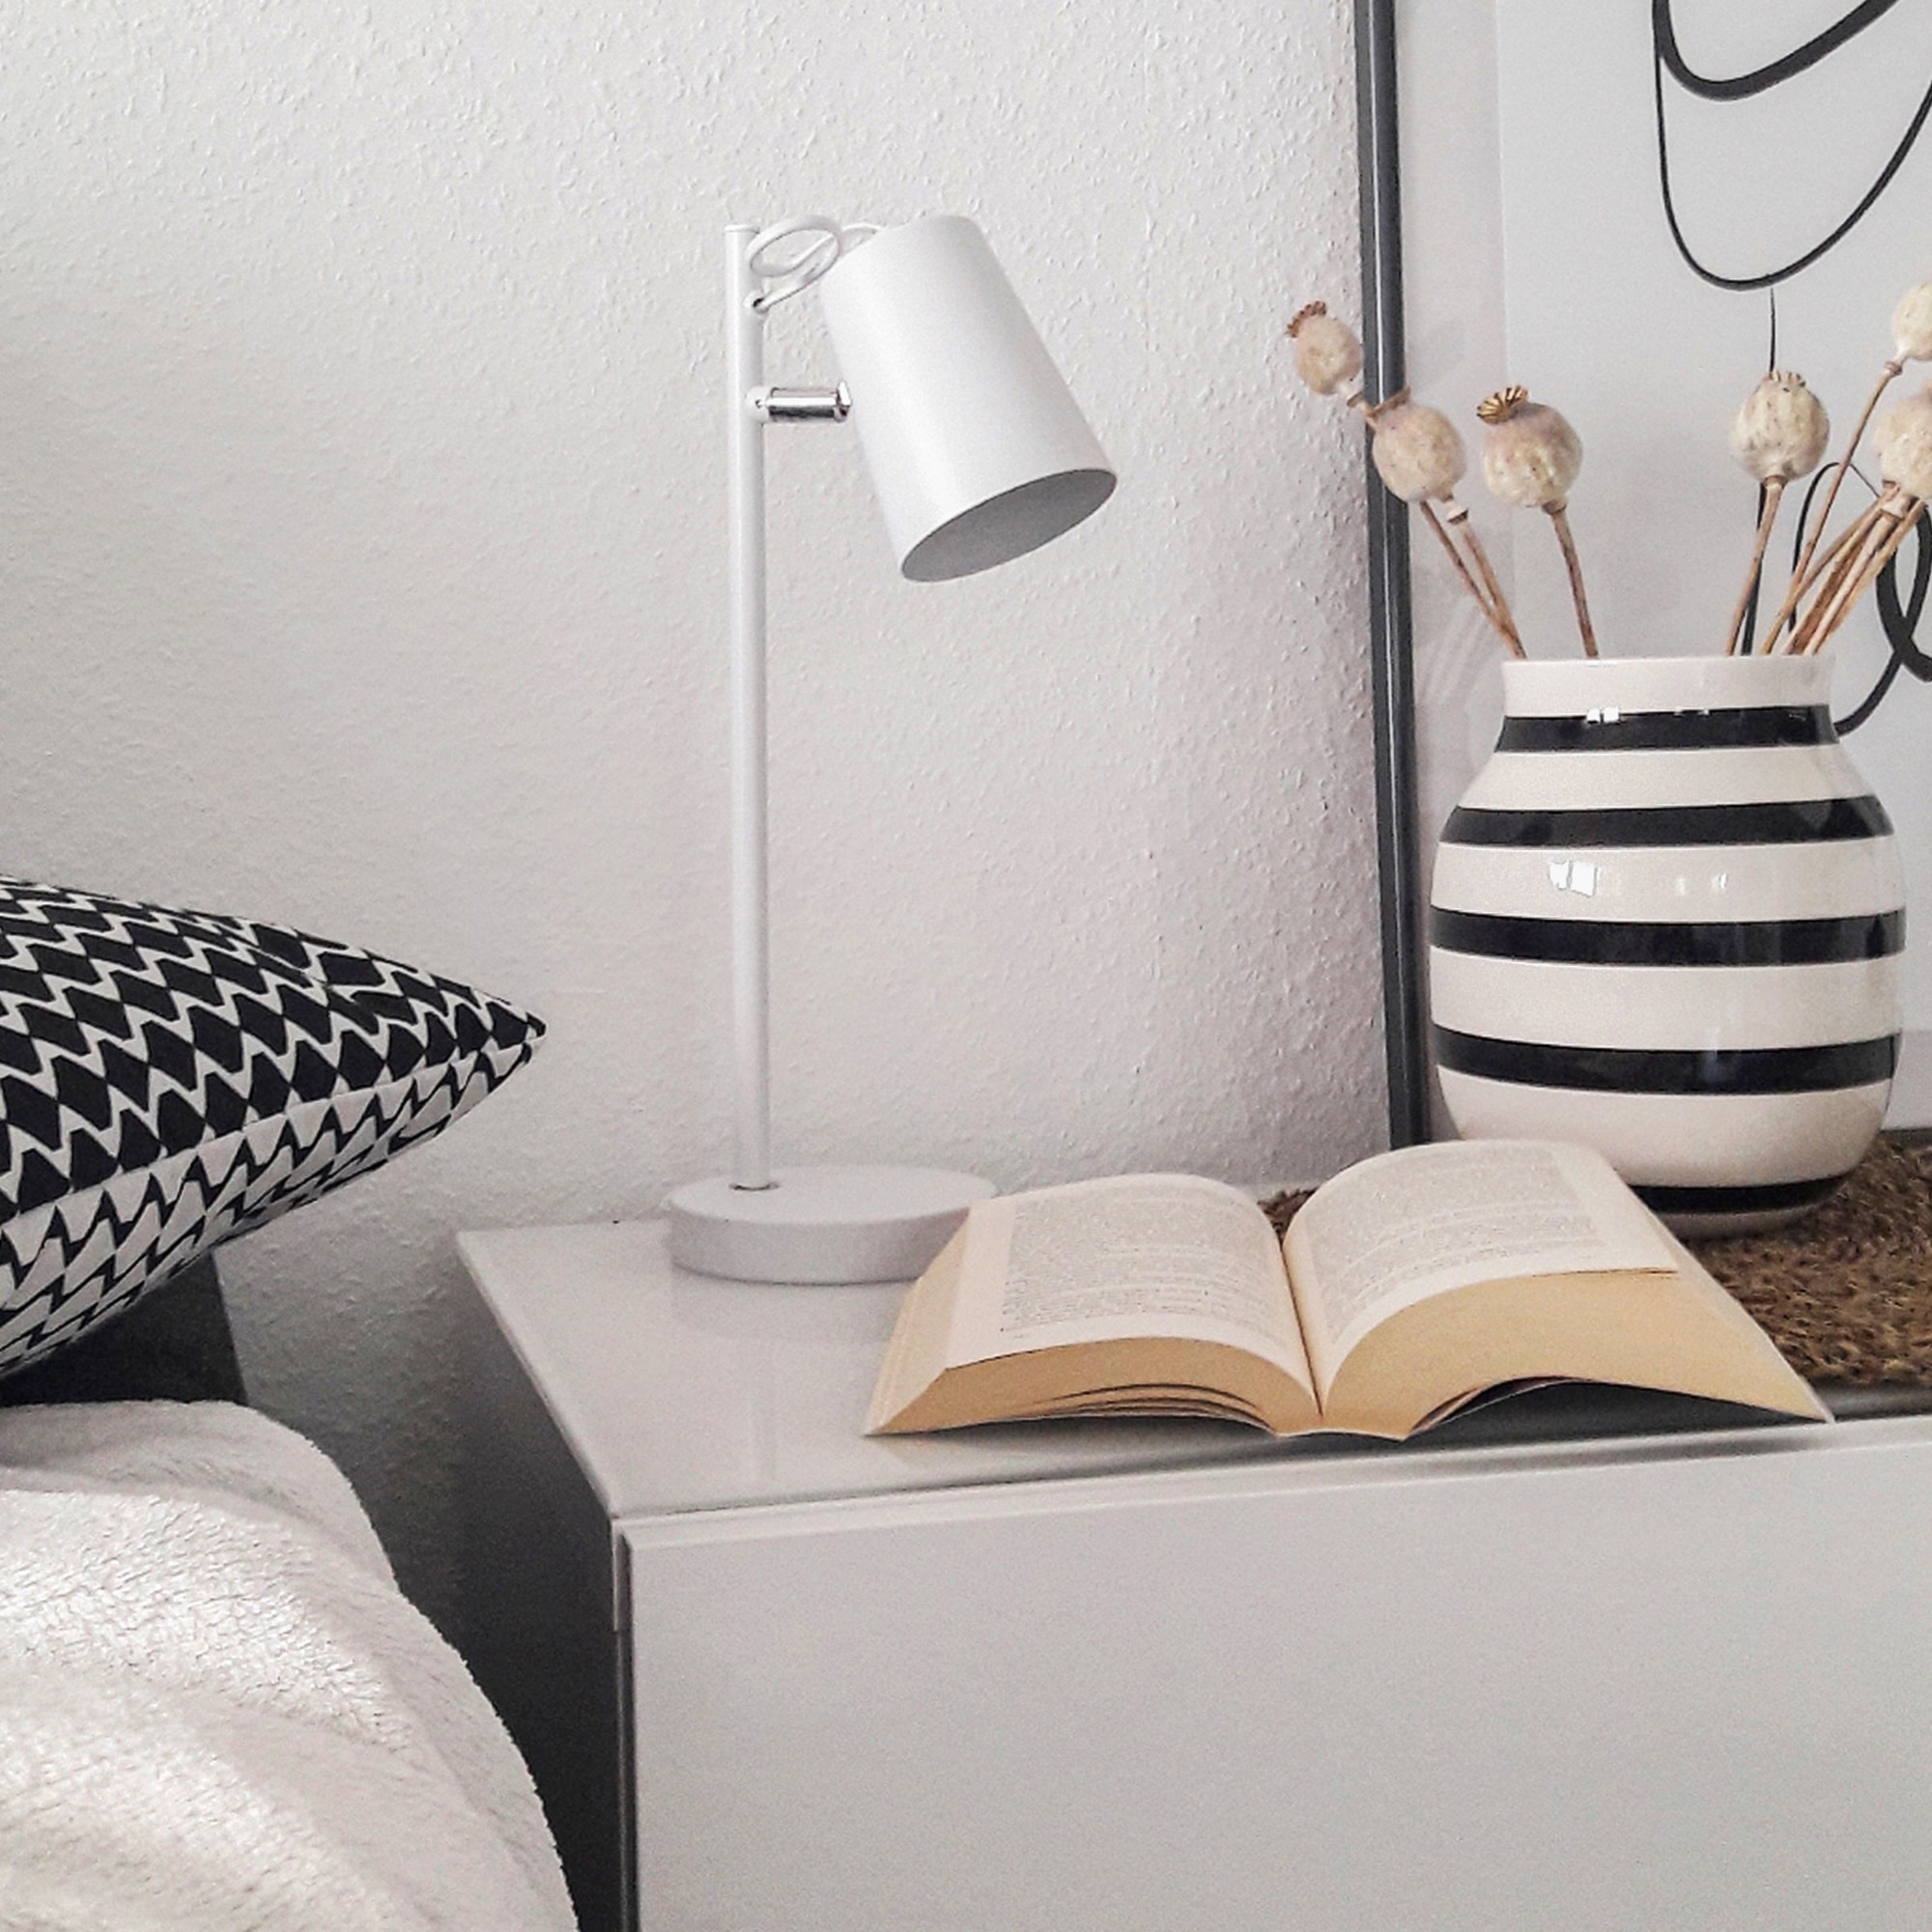 B.K.Licht LED Tischleuchte, E14 Weiß Schwenkbar kaufen flammig-flammig, Leselampe Schreibtisch-Lampe | günstig LED Tischlampe 1